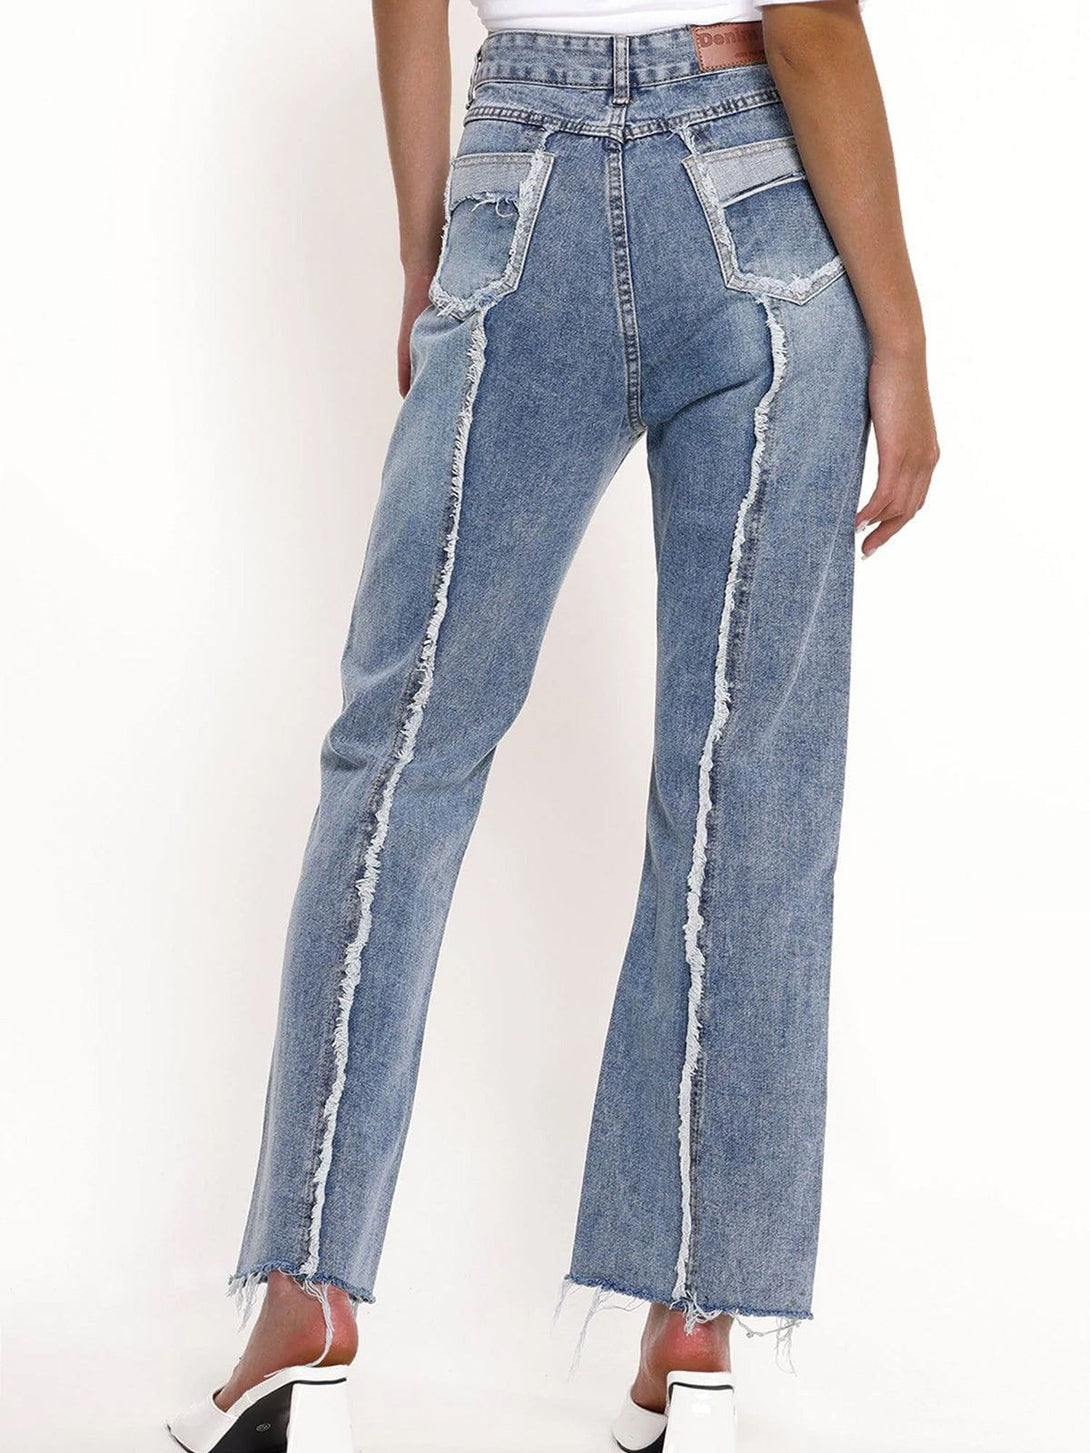 AlanBalen® - Pocket Frayed Jeans AlanBalen